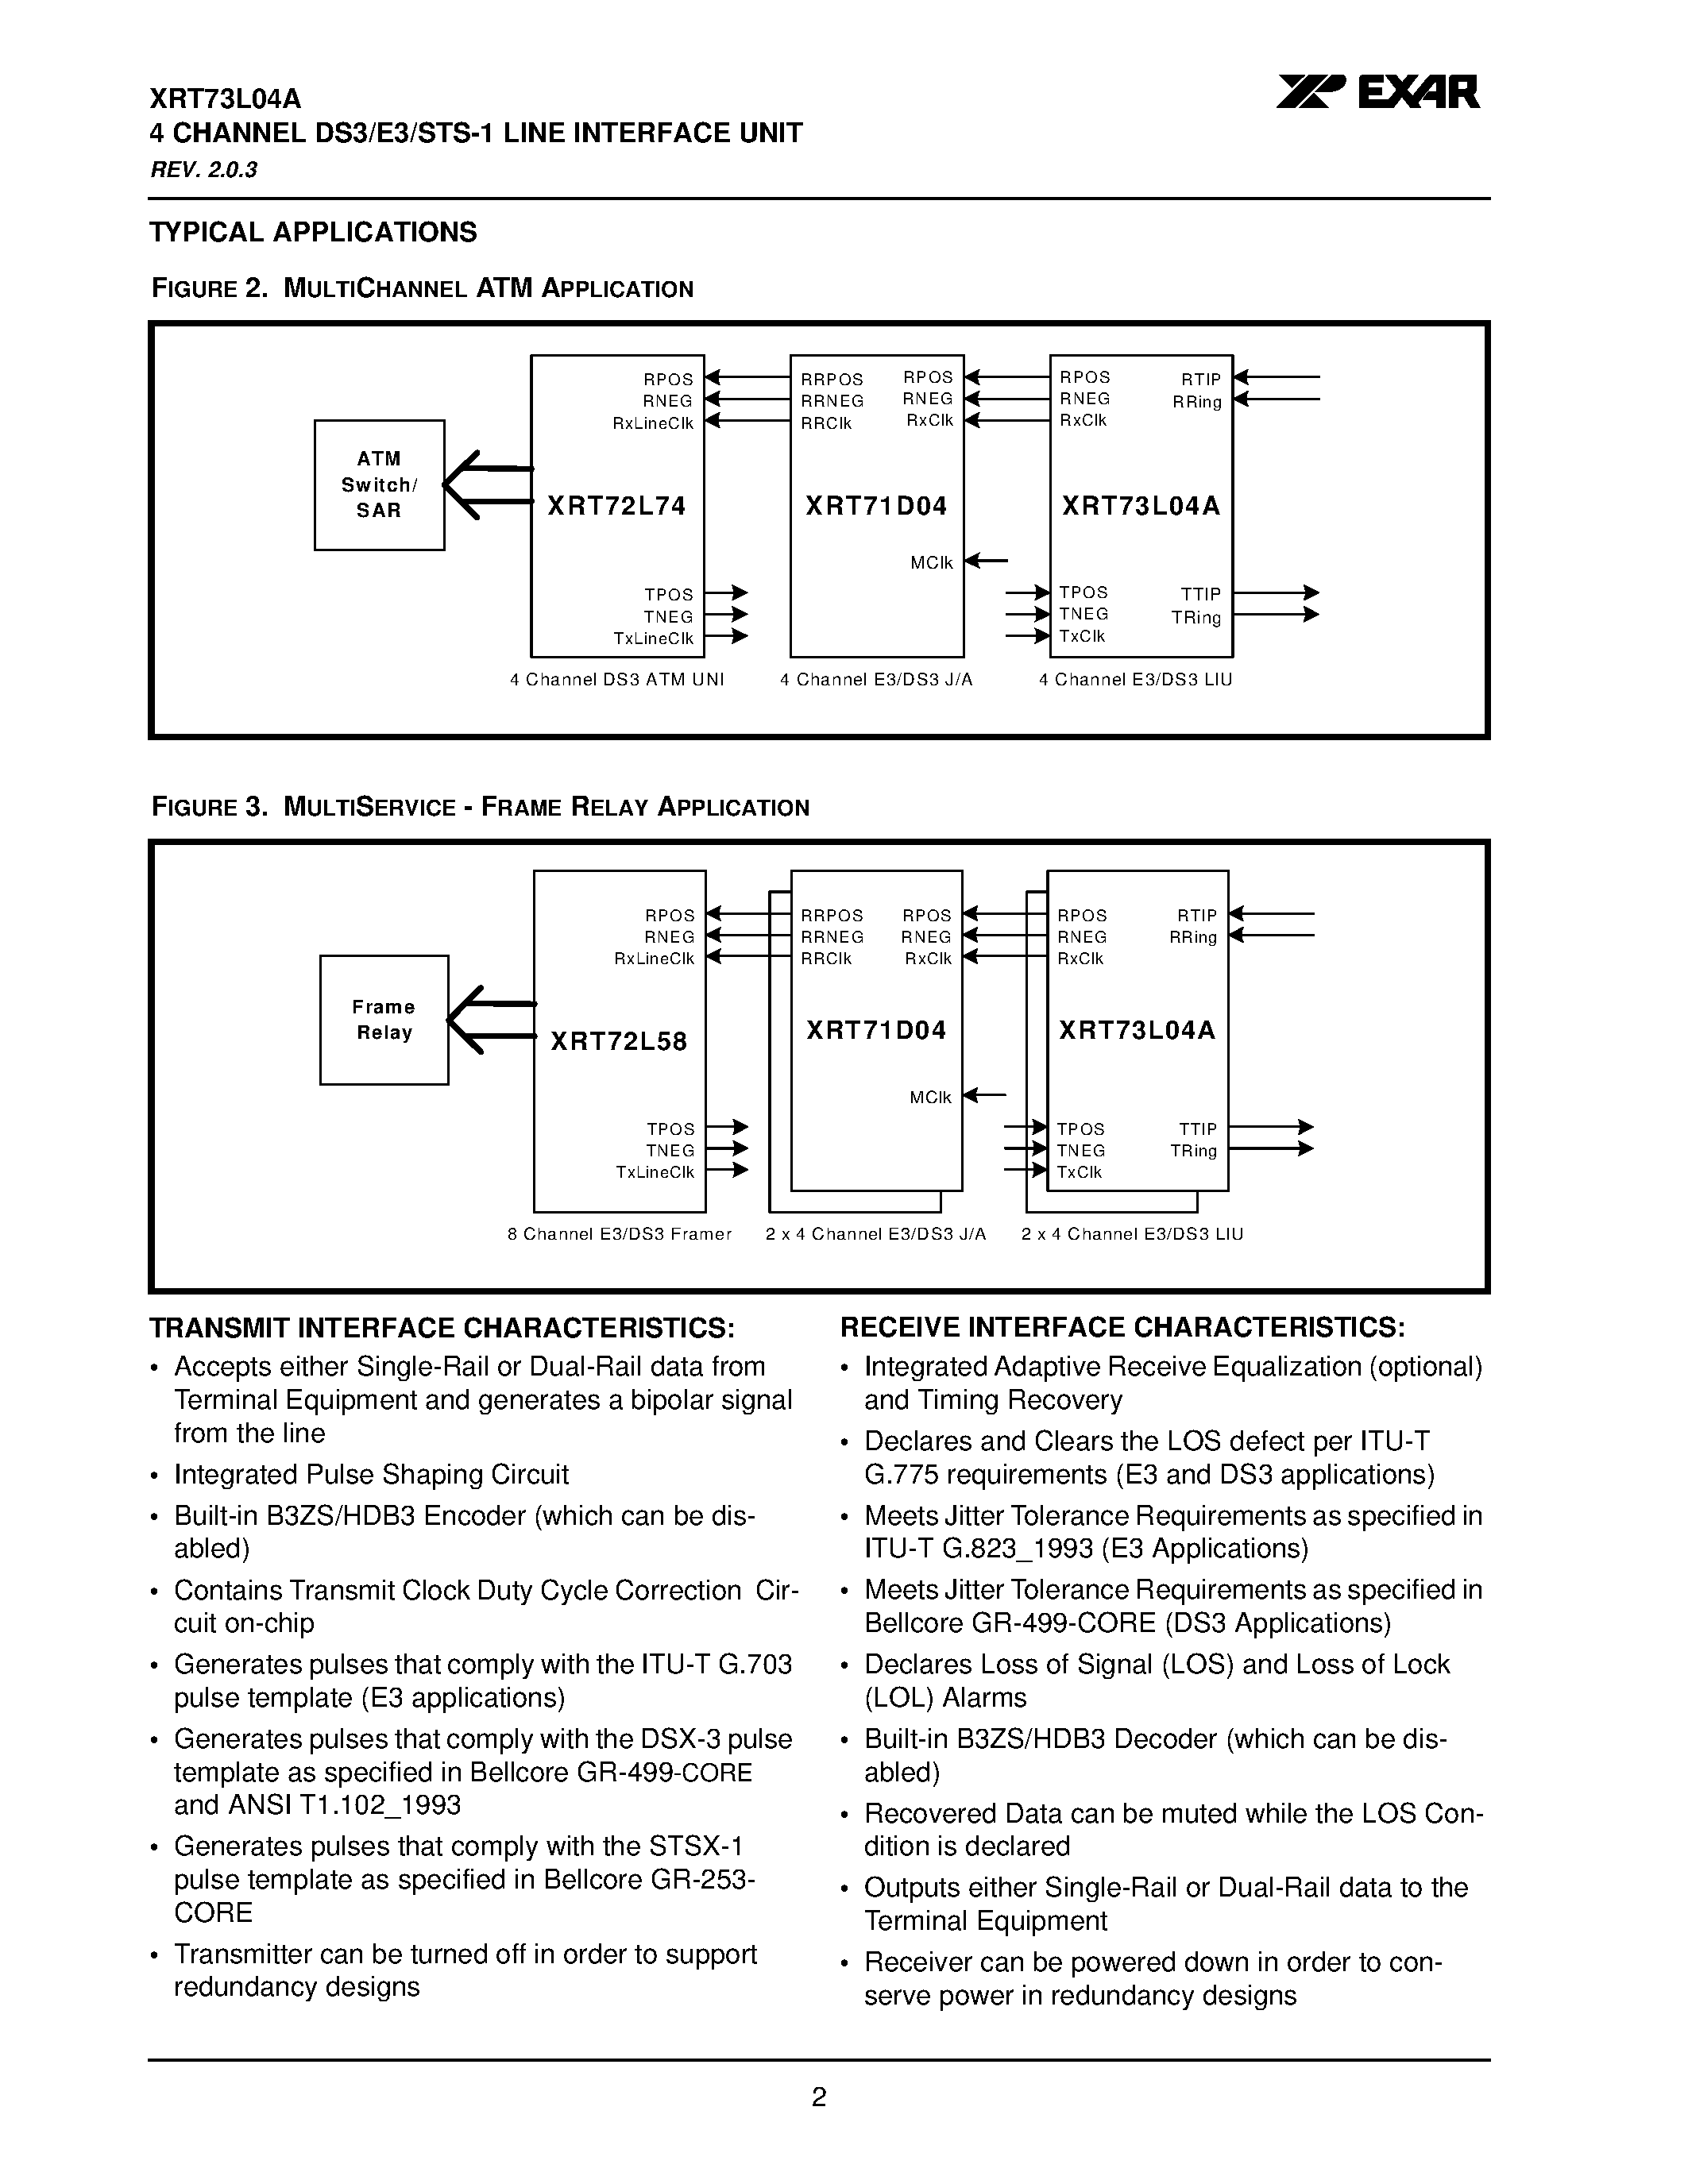 Даташит XRT73L04A - 4 CHANNEL DS3/E3/STS-1 LINE INTERFACE UNIT страница 2